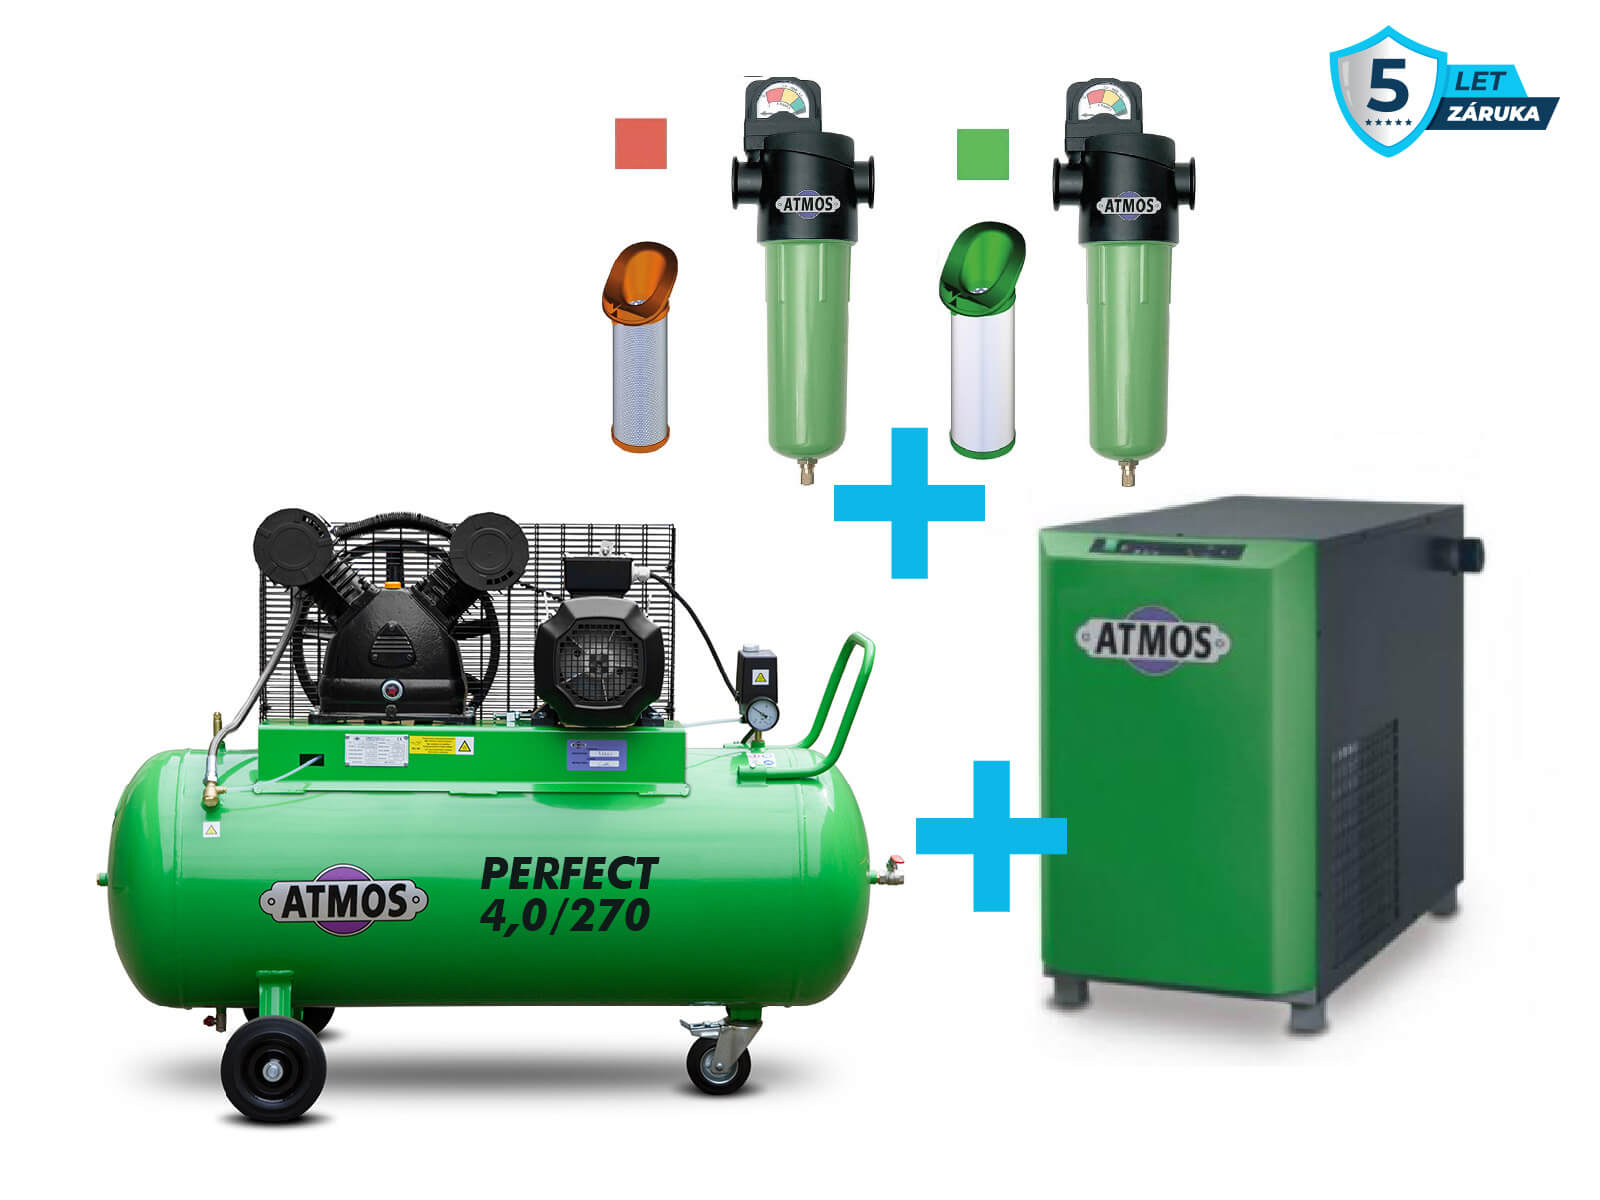 Atmos Sestava kompresor + sušička + filtrace - SAP4/270 příkon 4,0 kW, výkon 650 l/min, 10 bar, vzdušník 270 l, sušička, filtrace